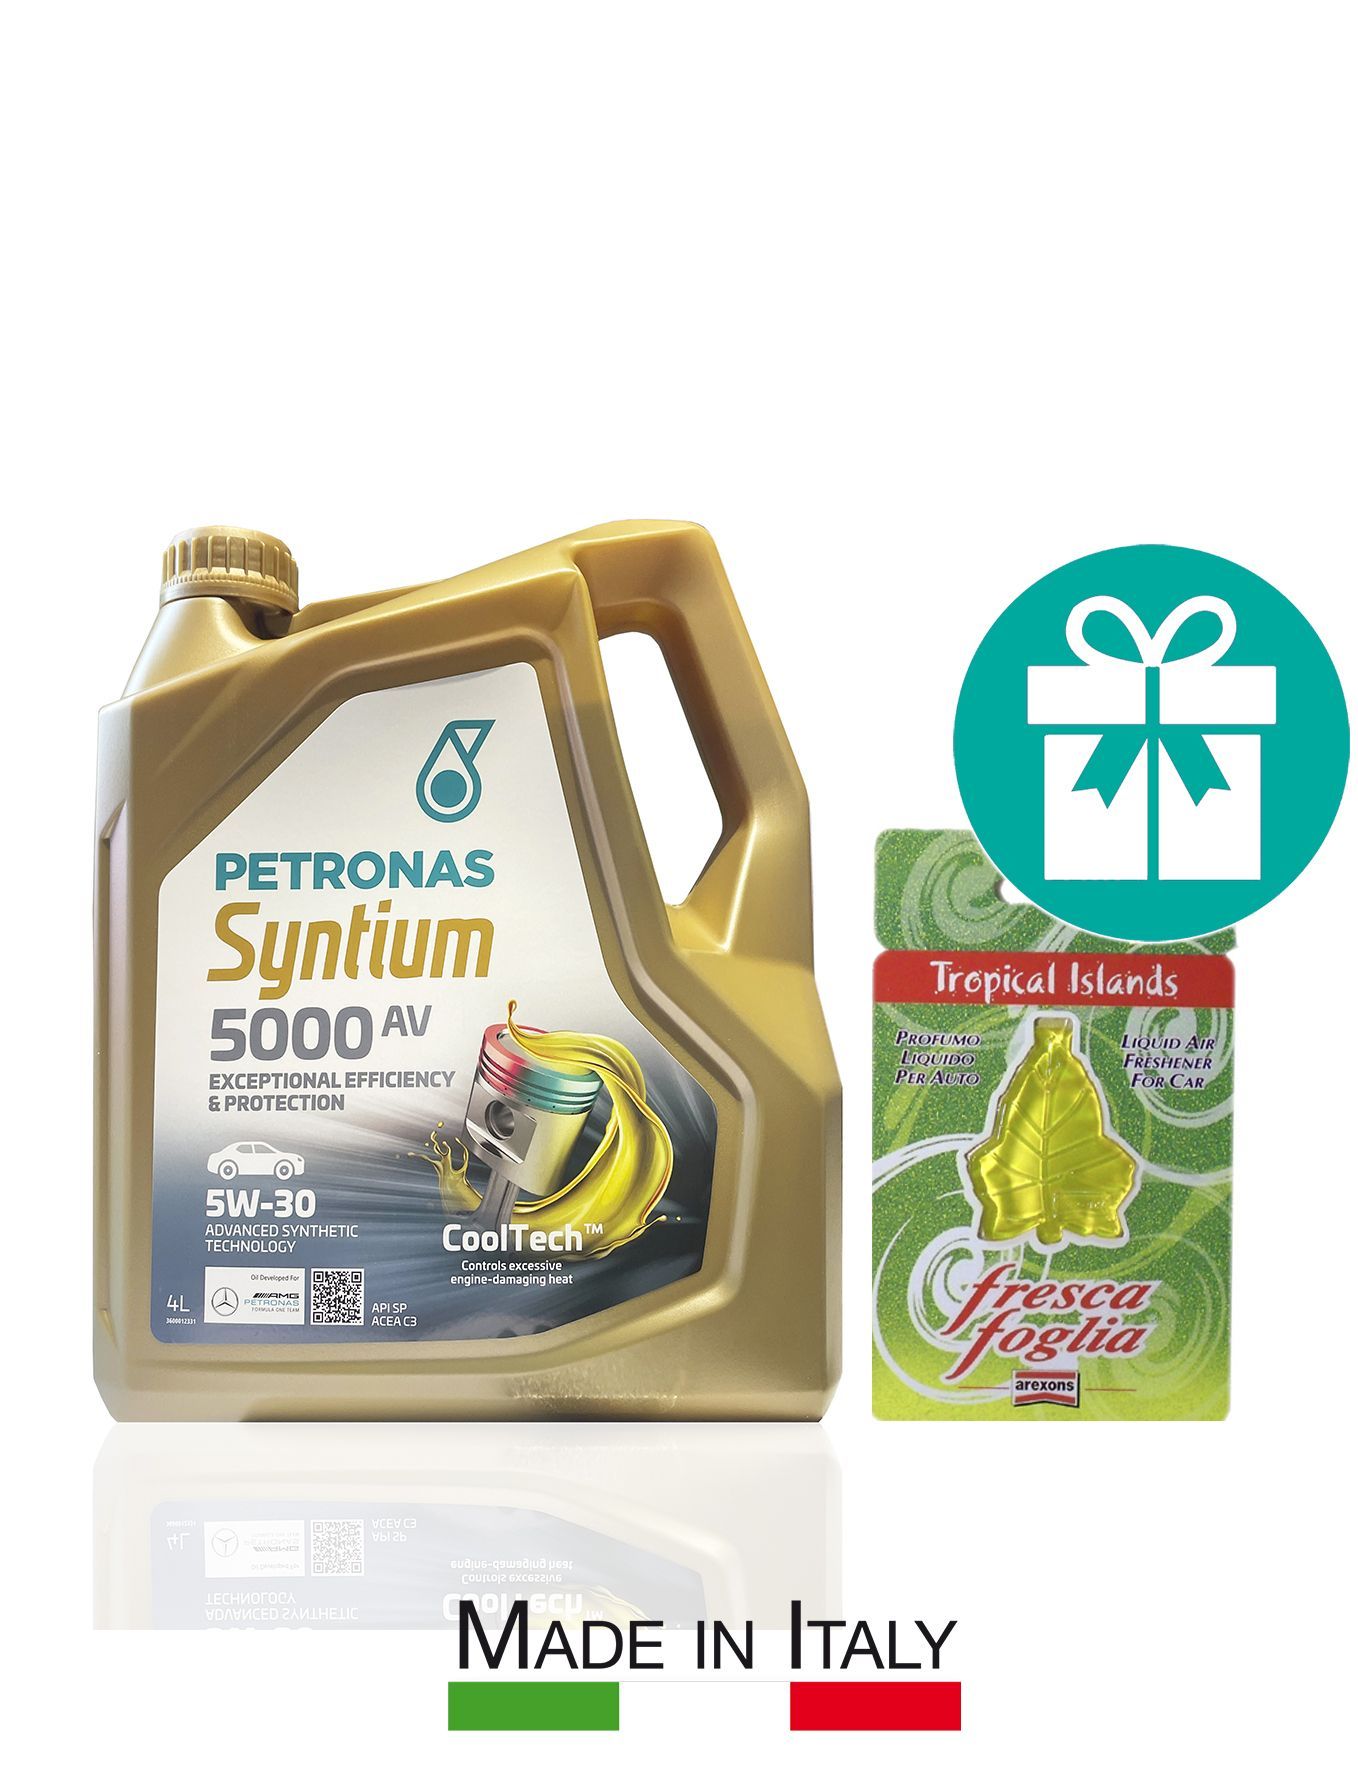 Petronas Syntium 5000 av 5w30 цены. Моторное масло Petronas Syntium 5000 av 5w30 20 л. Моторное масло Petronas Syntium 5000 av 5w30 60 л. Моторное масло Petronas Syntium 5000 av 5w30 4 л.